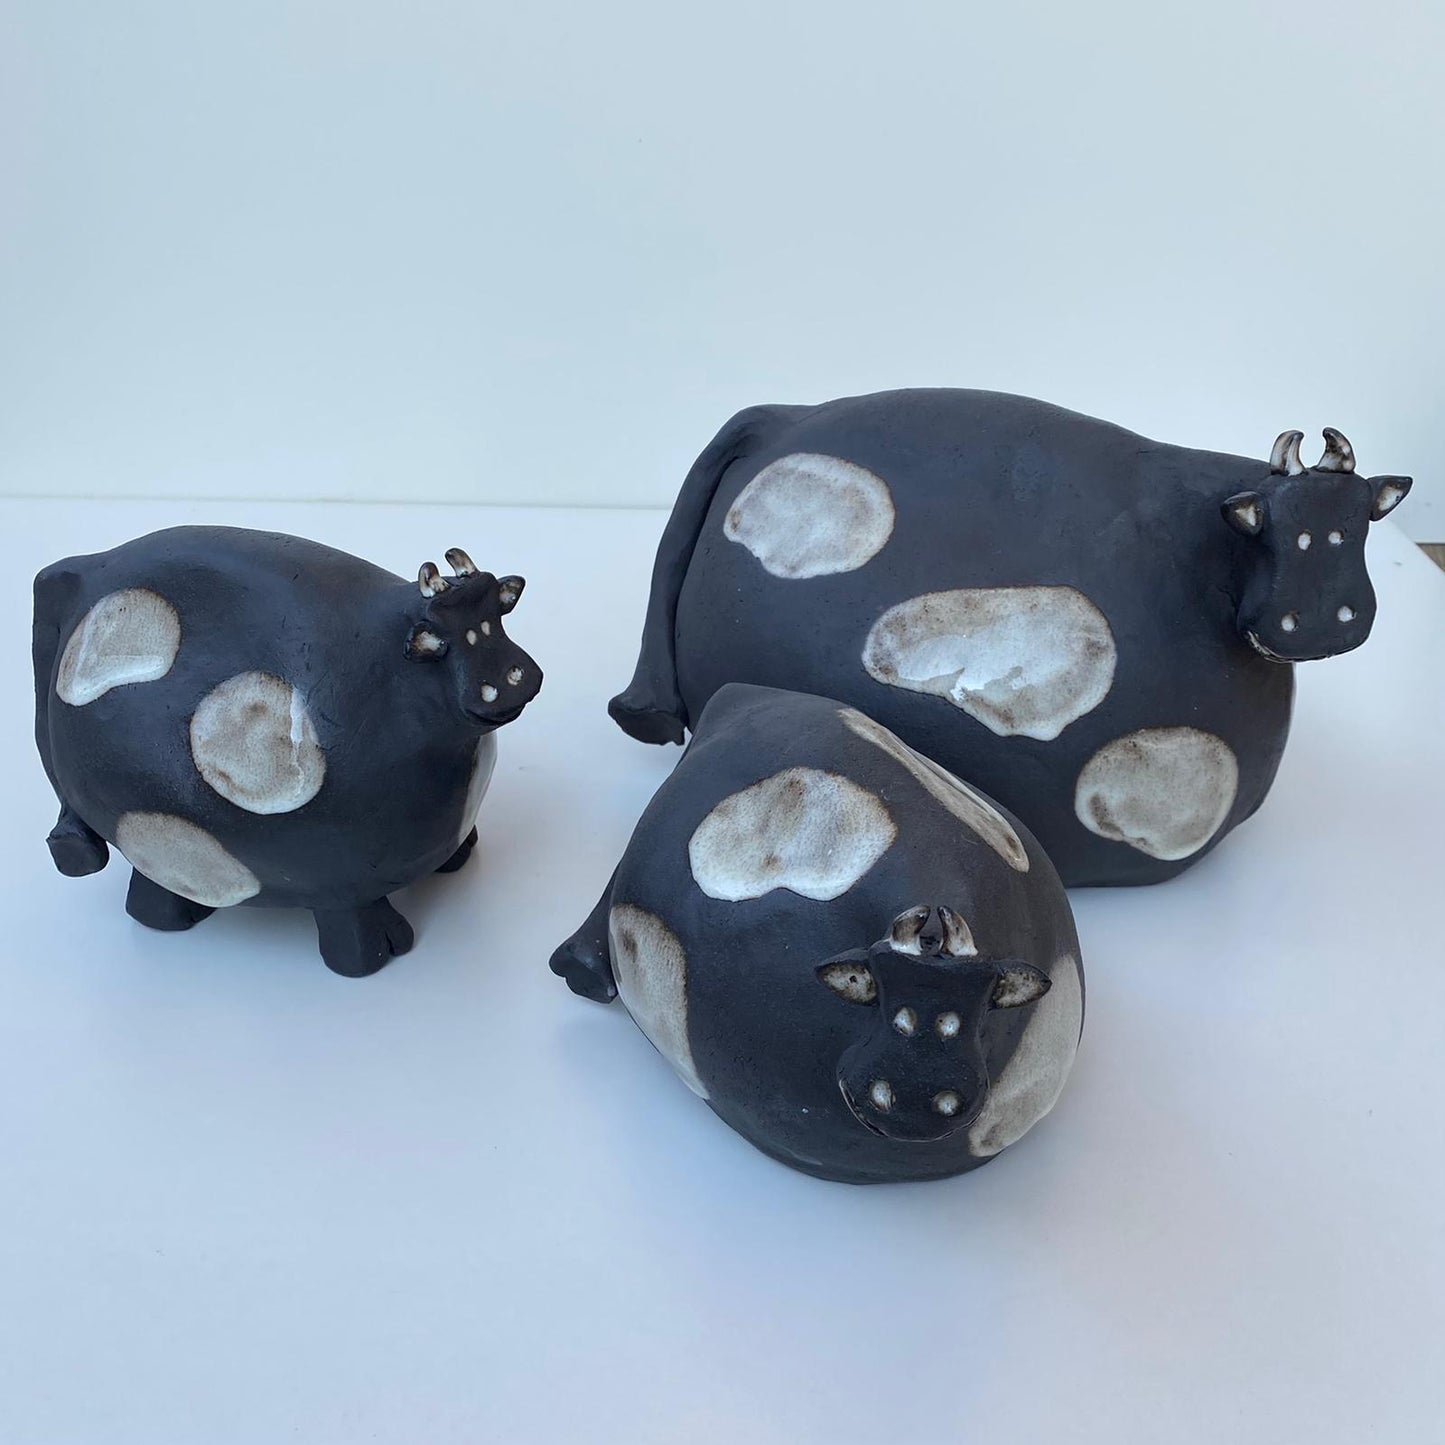 Schwarz-weiß gefleckte Kühe aus Keramik, schwarzer Steinzeugton.